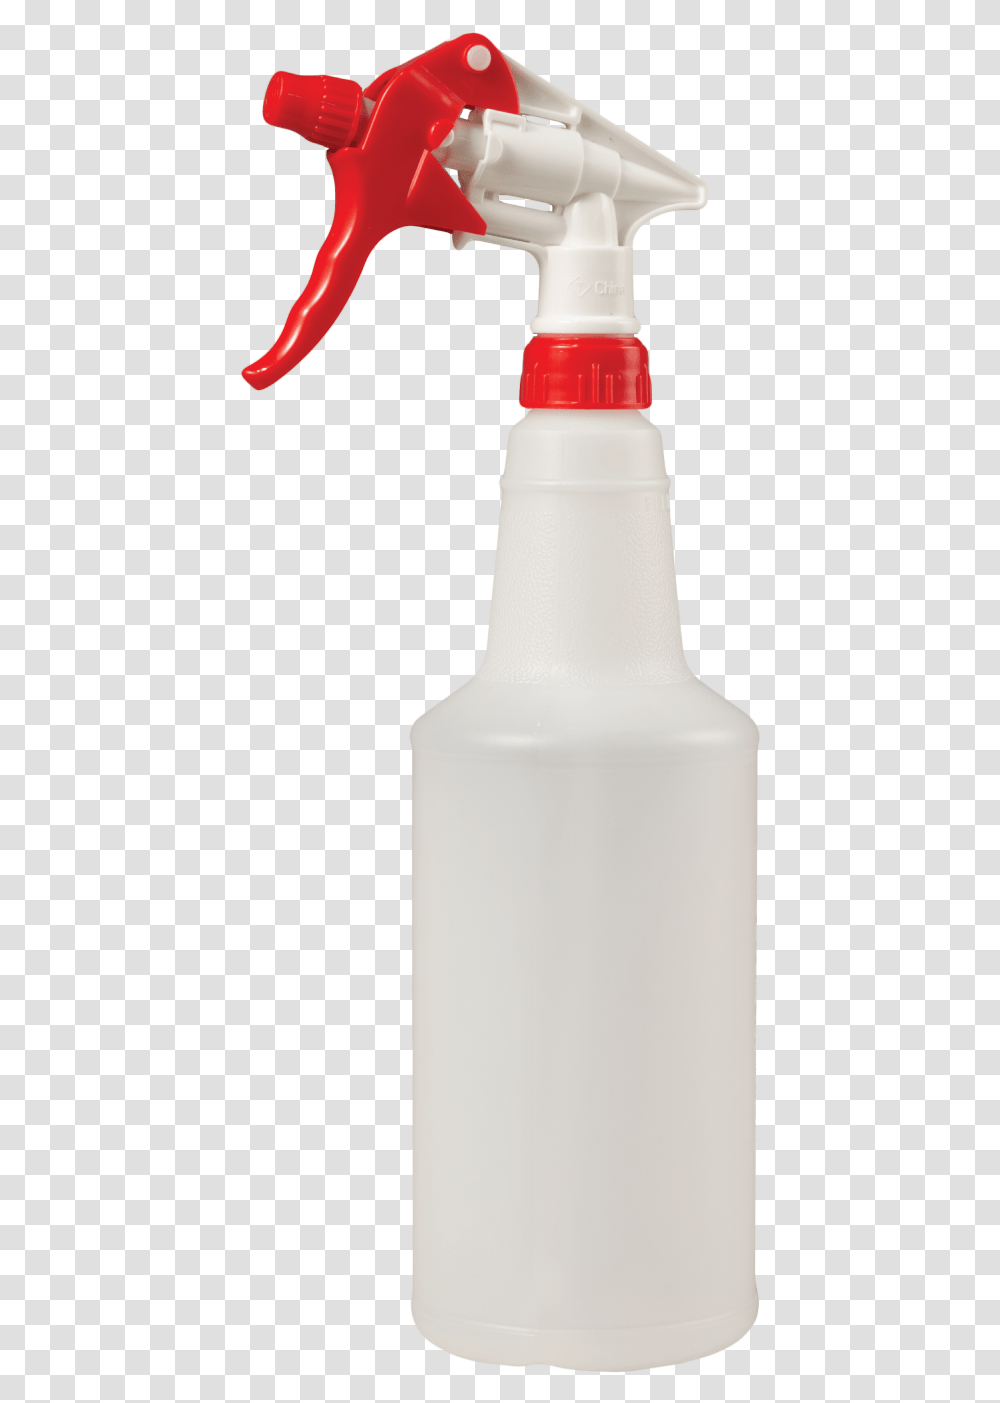 Spray Bottle Wtrigger Beer Bottle, Milk, Beverage, Shaker, Jar Transparent Png